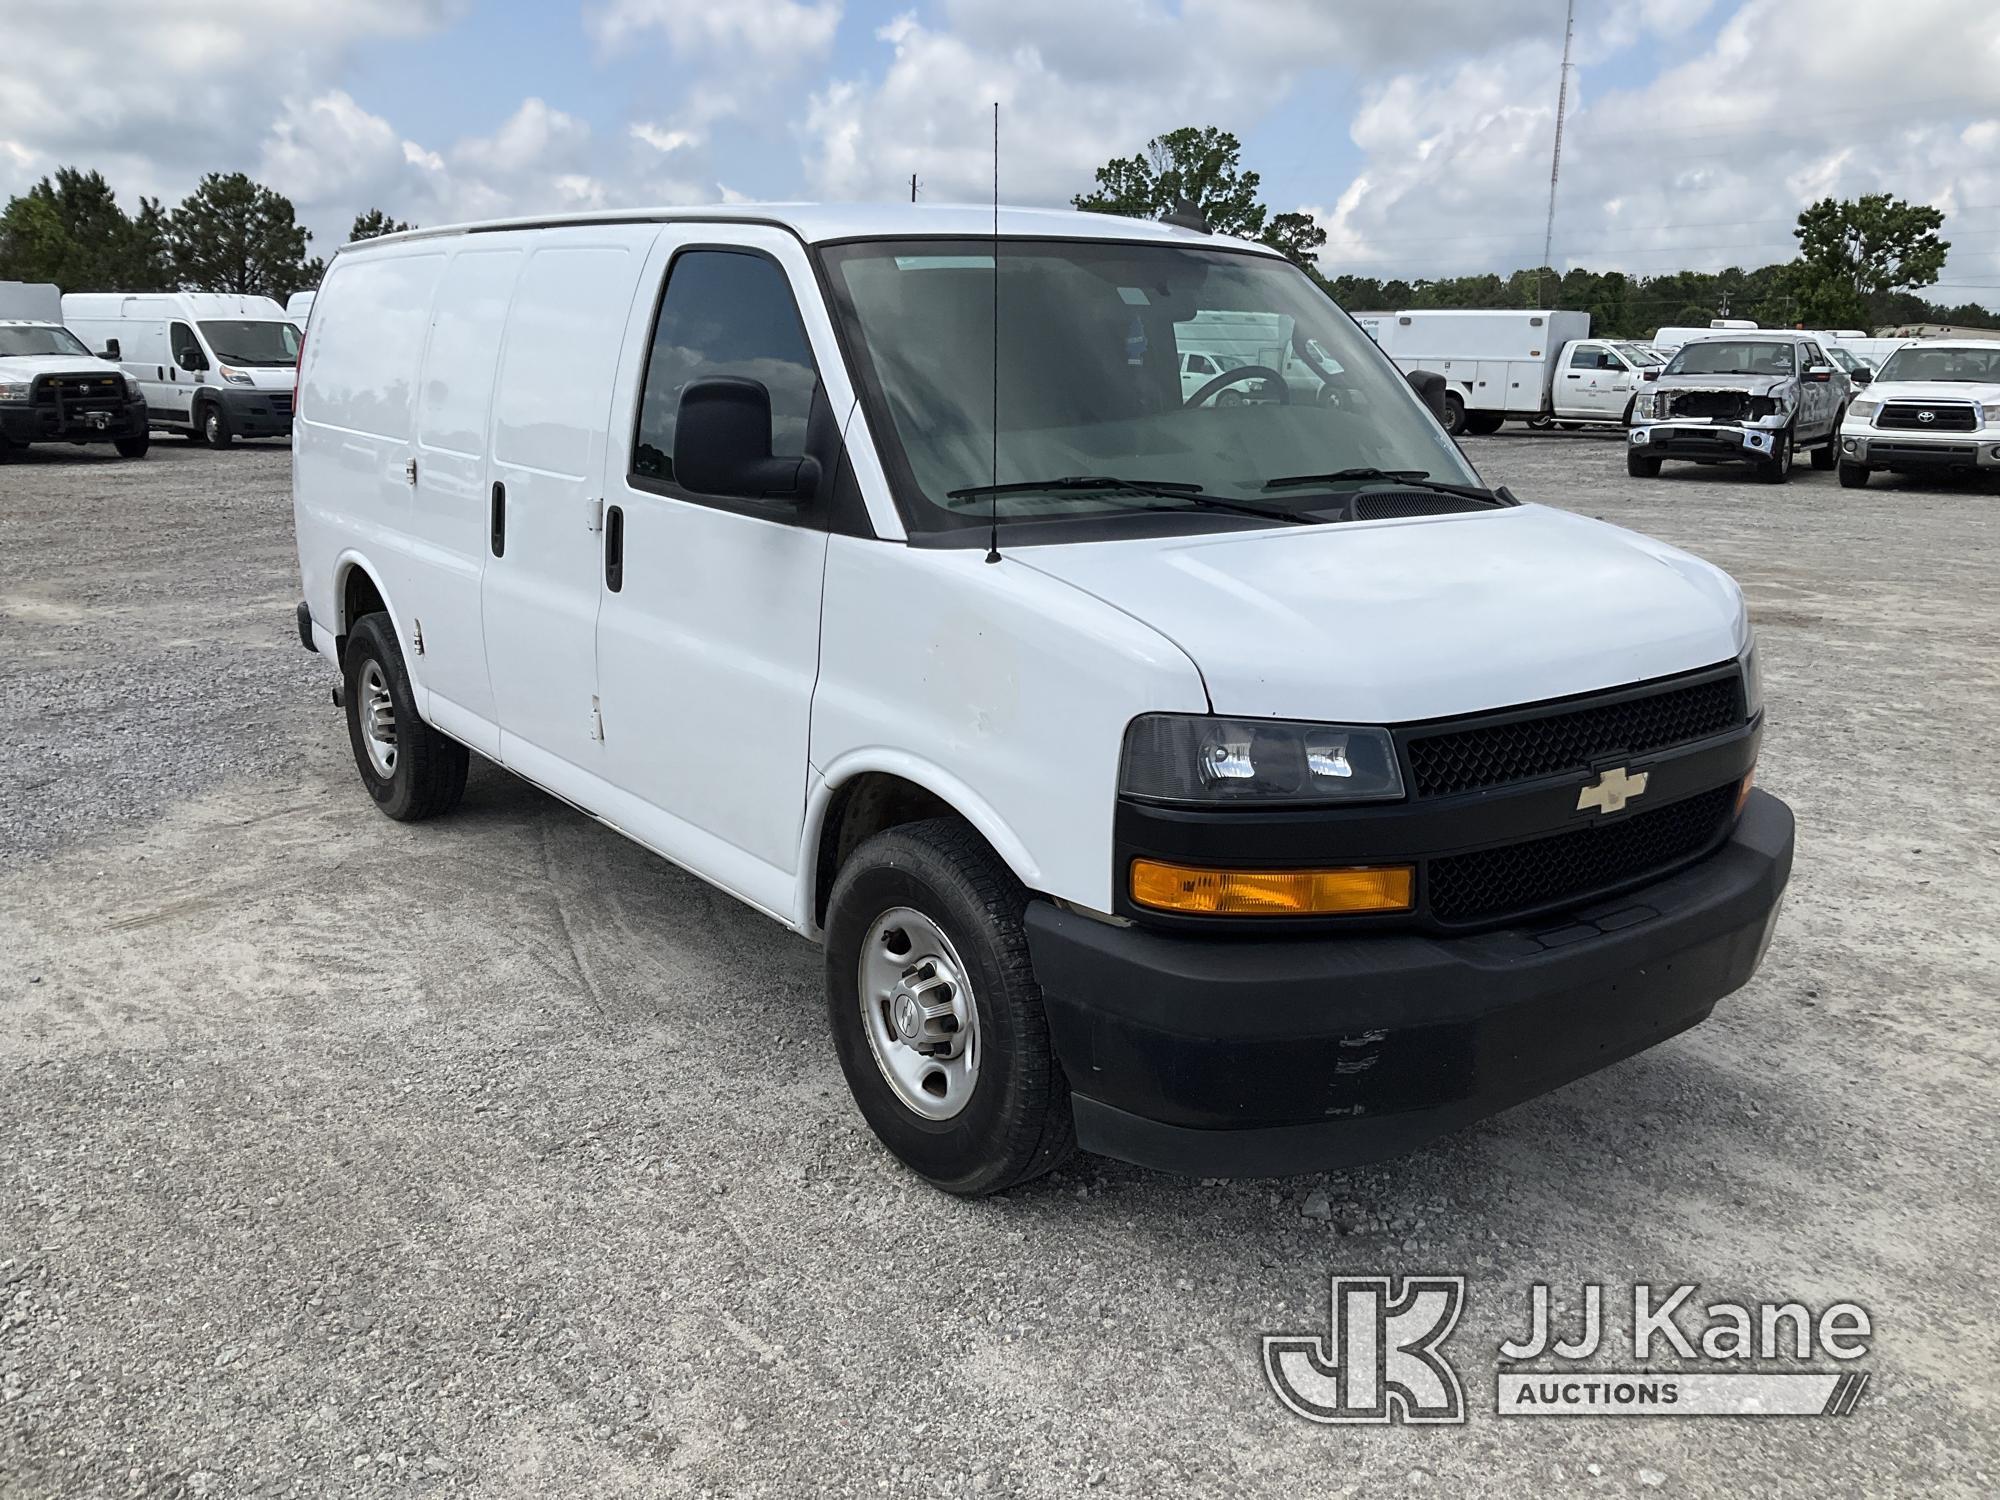 (Villa Rica, GA) 2018 Chevrolet Express G2500 Cargo Van Runs & Moves) (Air Compressor Condition Unkn